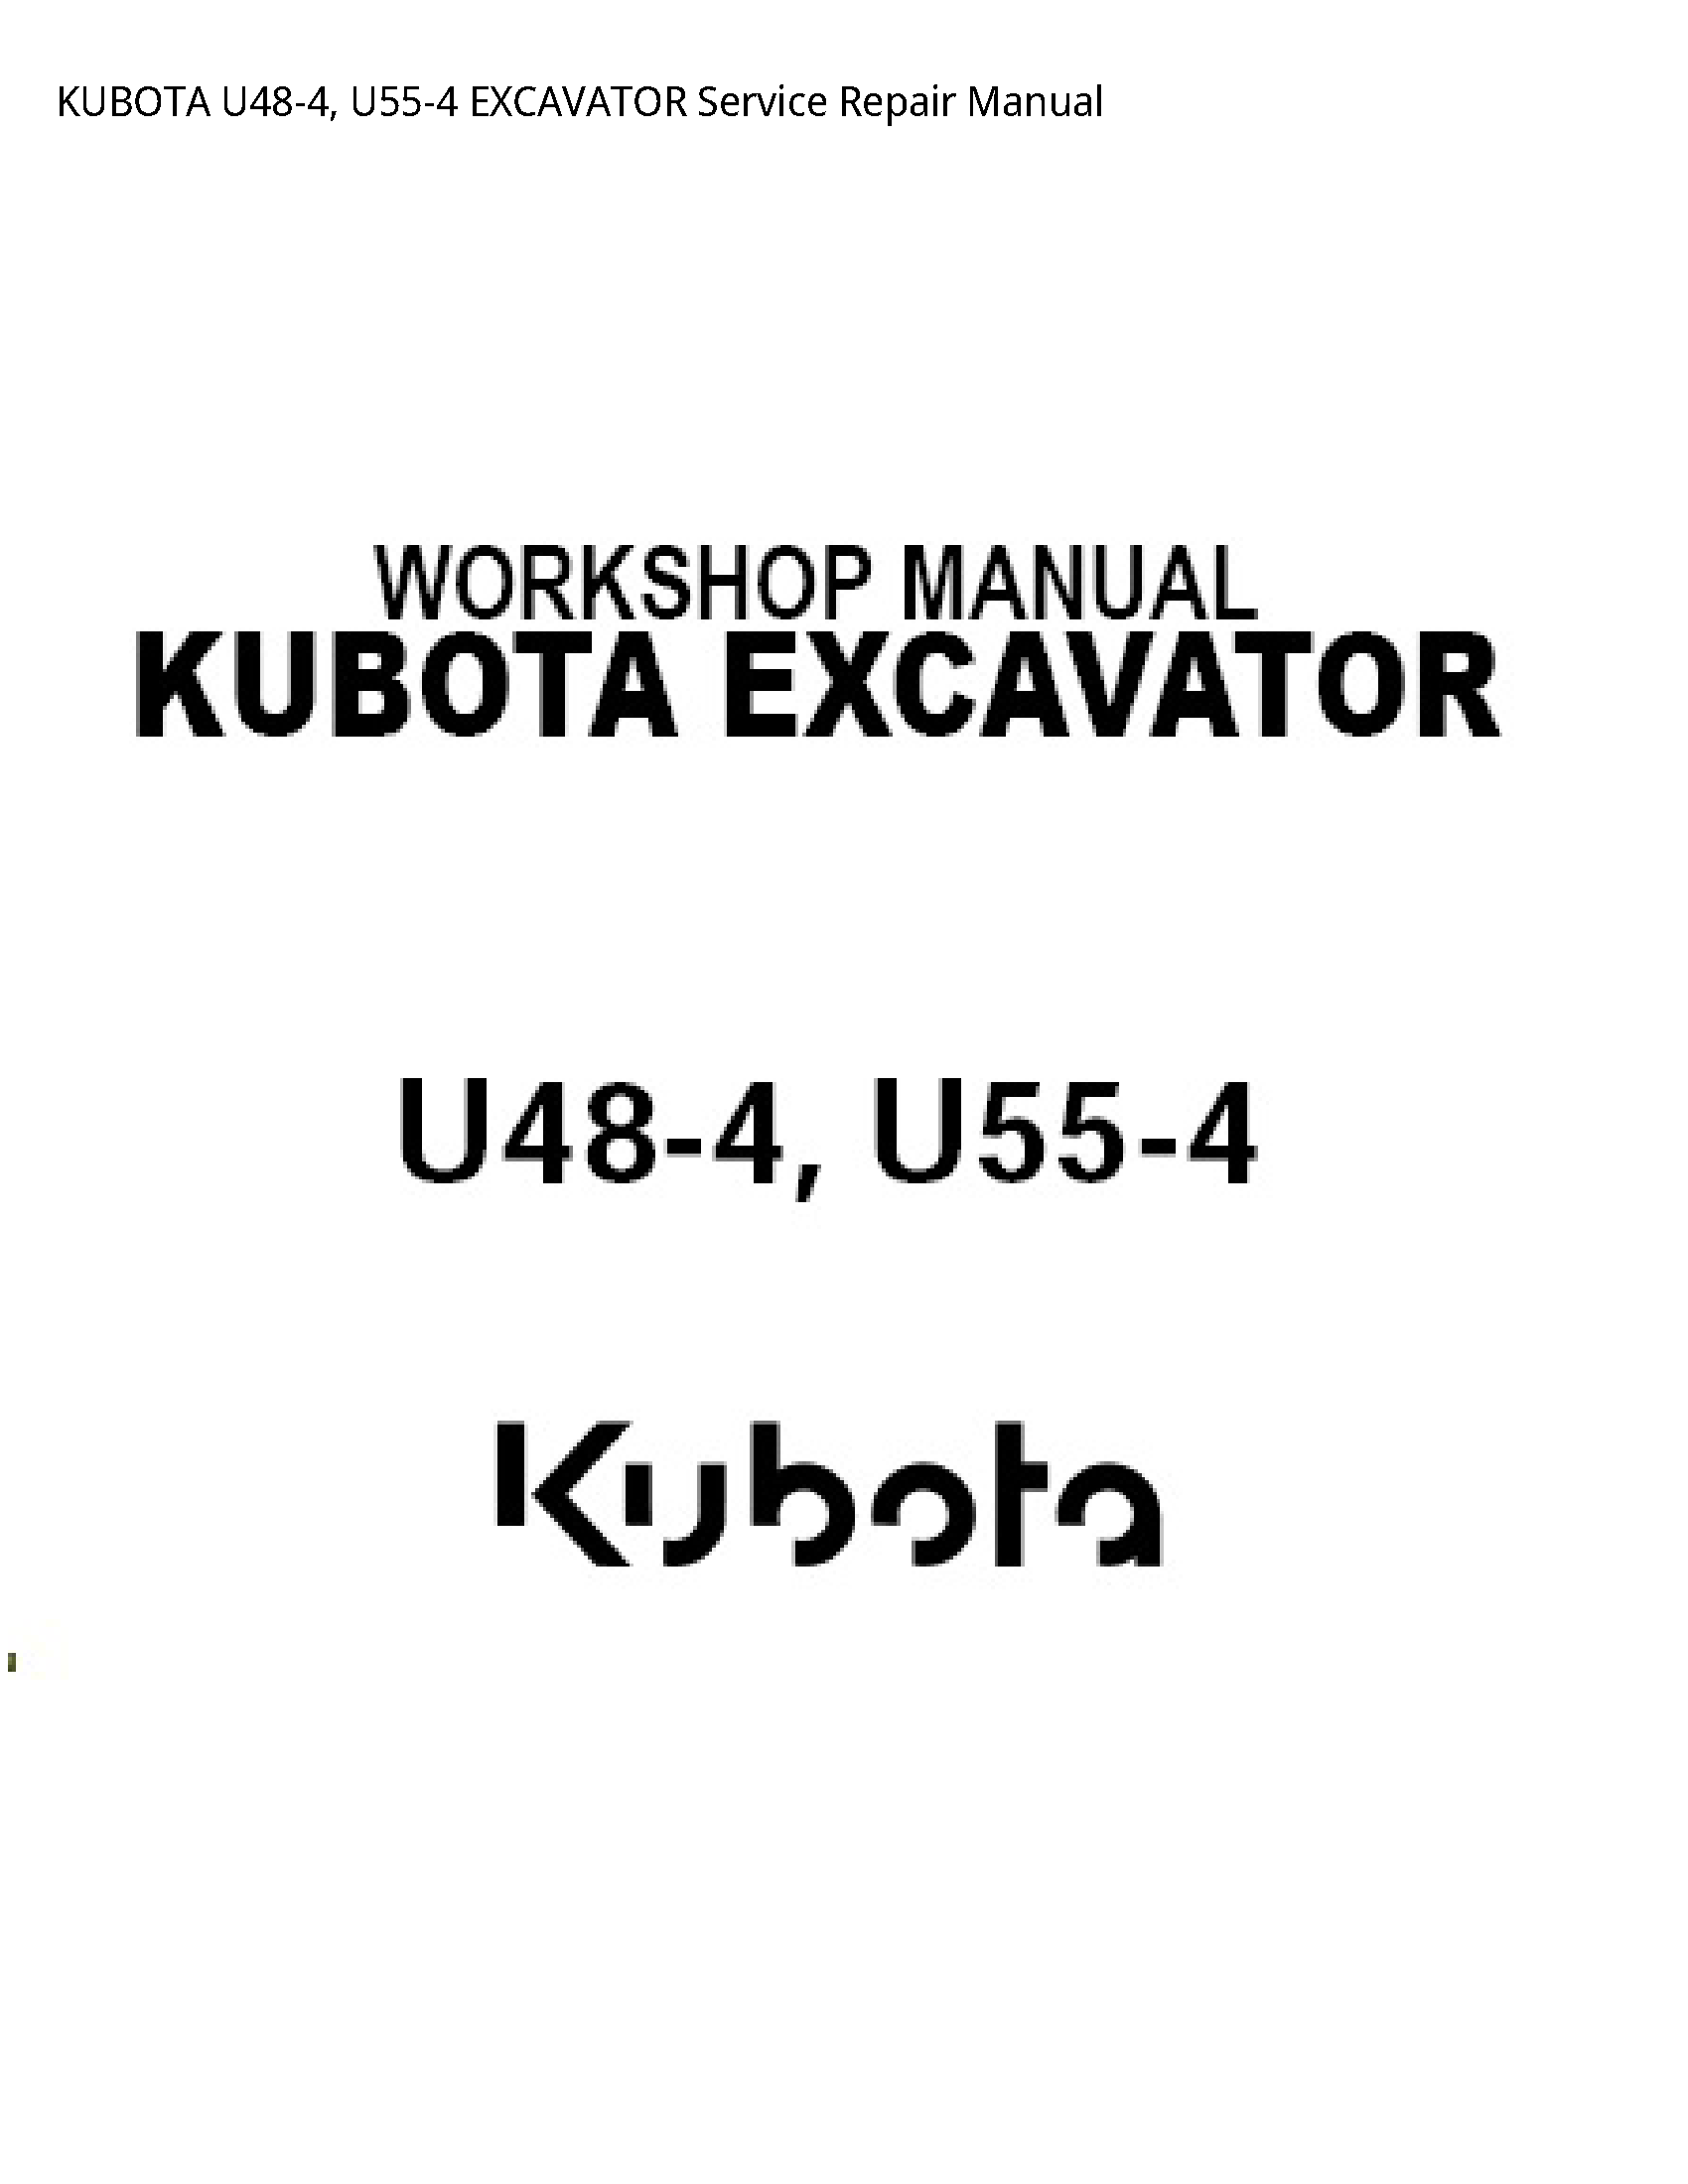 Kubota U48-4 EXCAVATOR manual